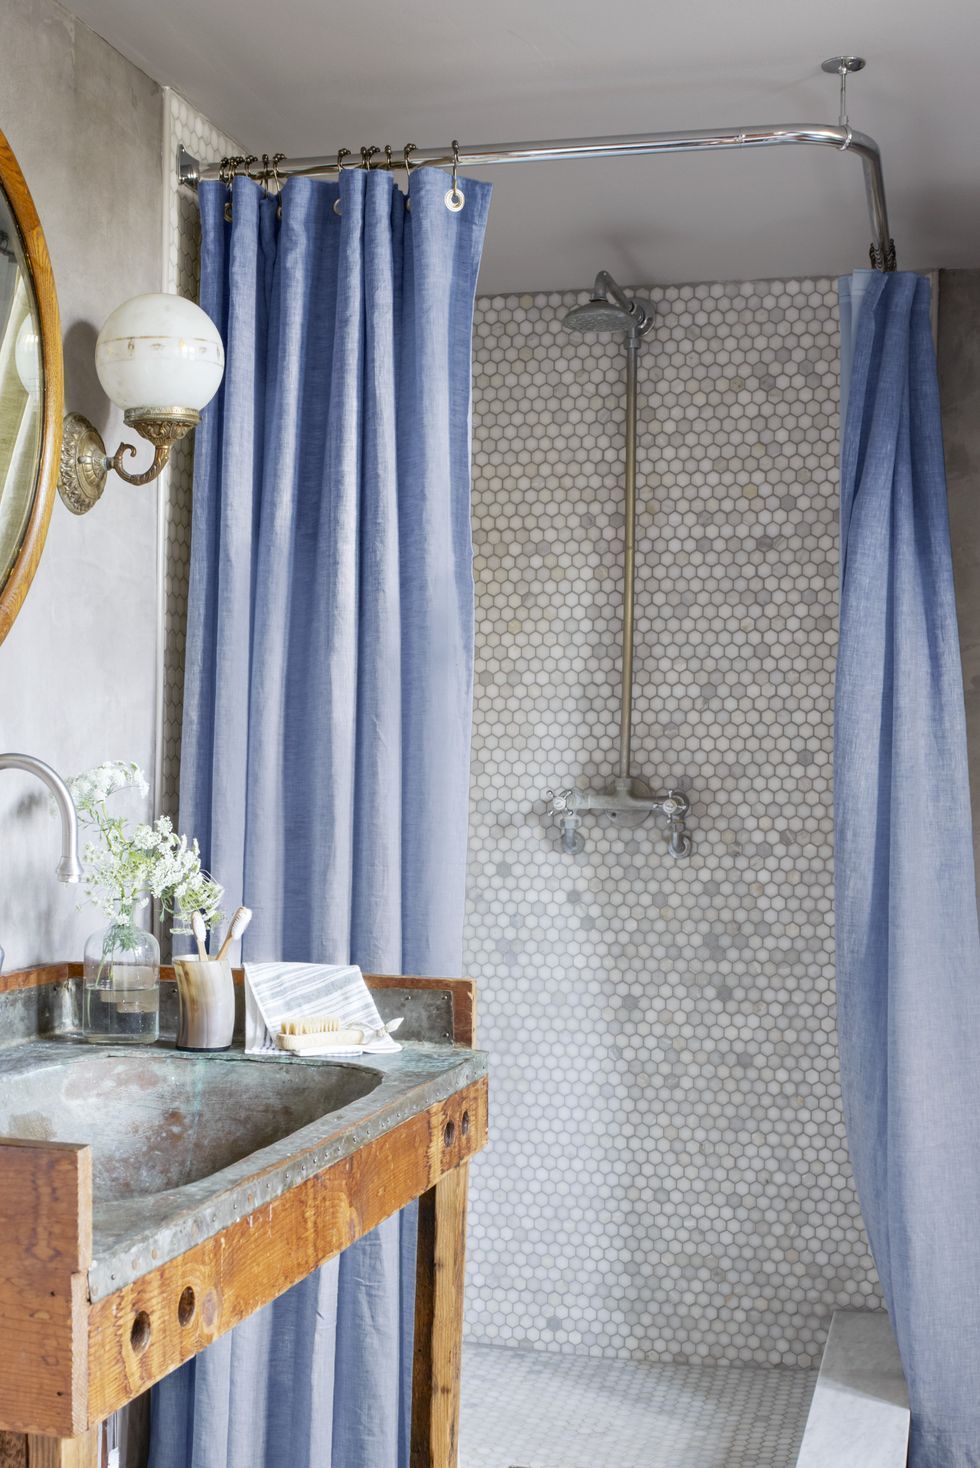 Bathroom Shower Tile Ideas